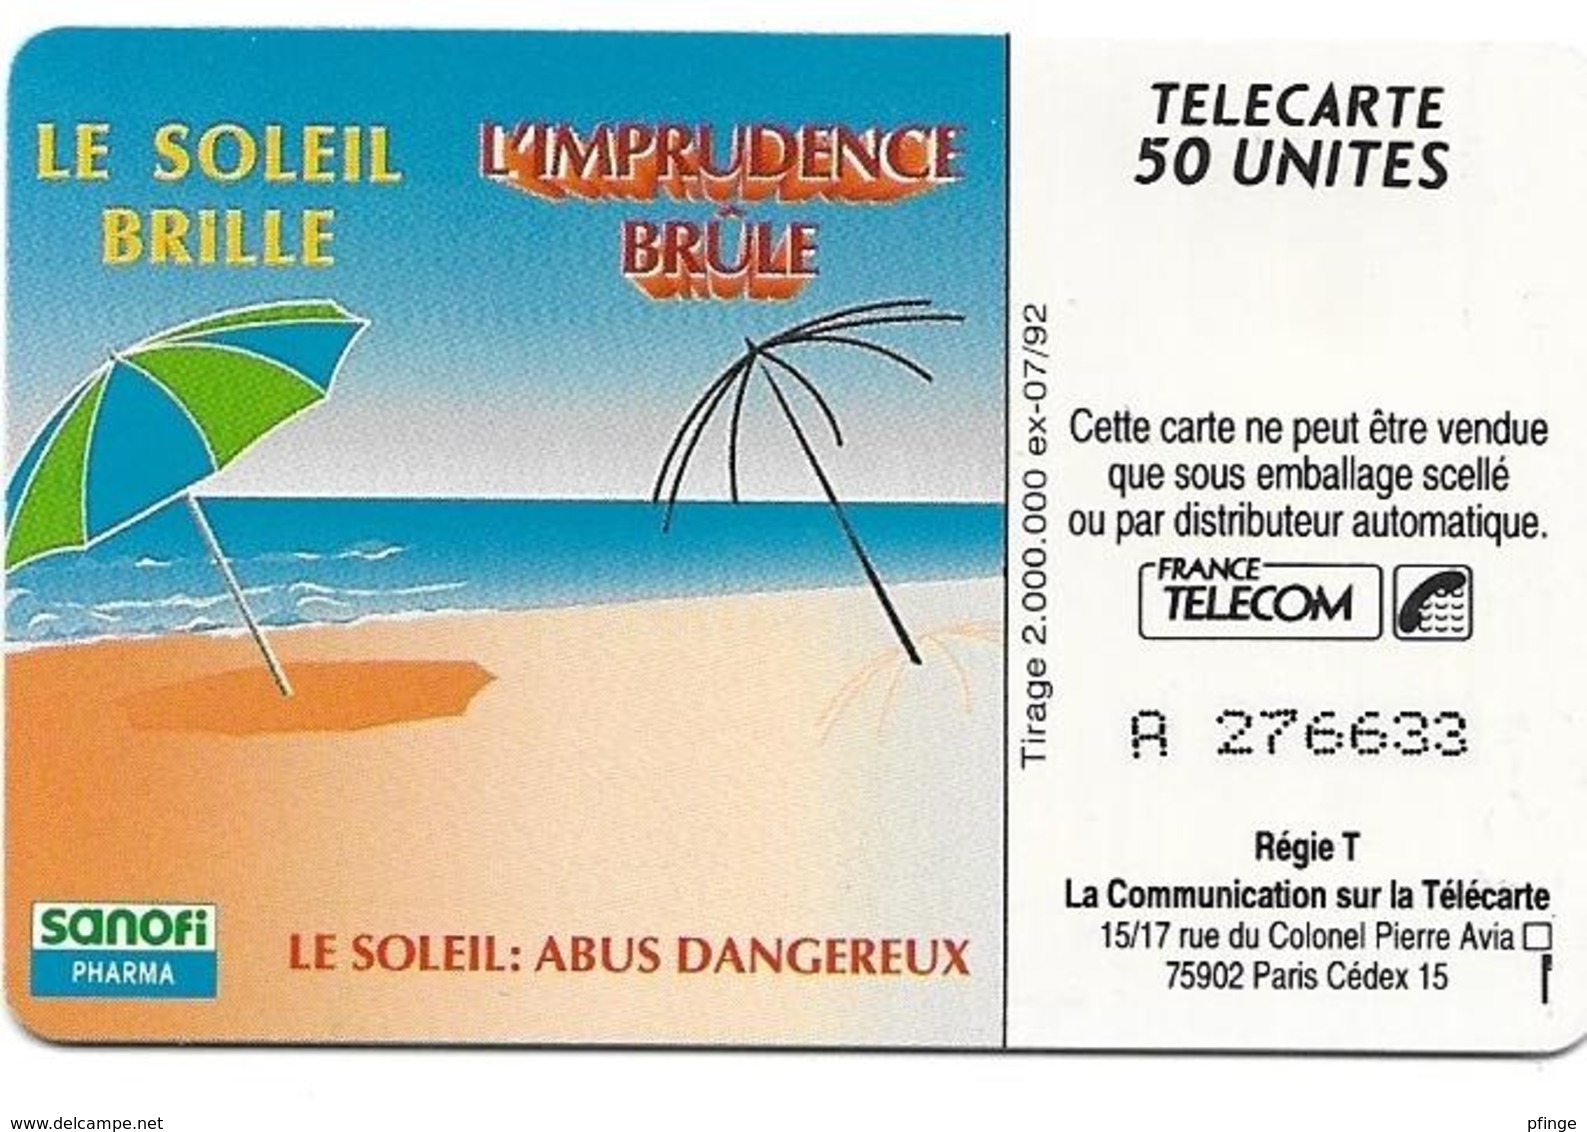 Telecarte 50 - Sanofi - Le Soleil Brille , L'imprudence Brûle - Publicité